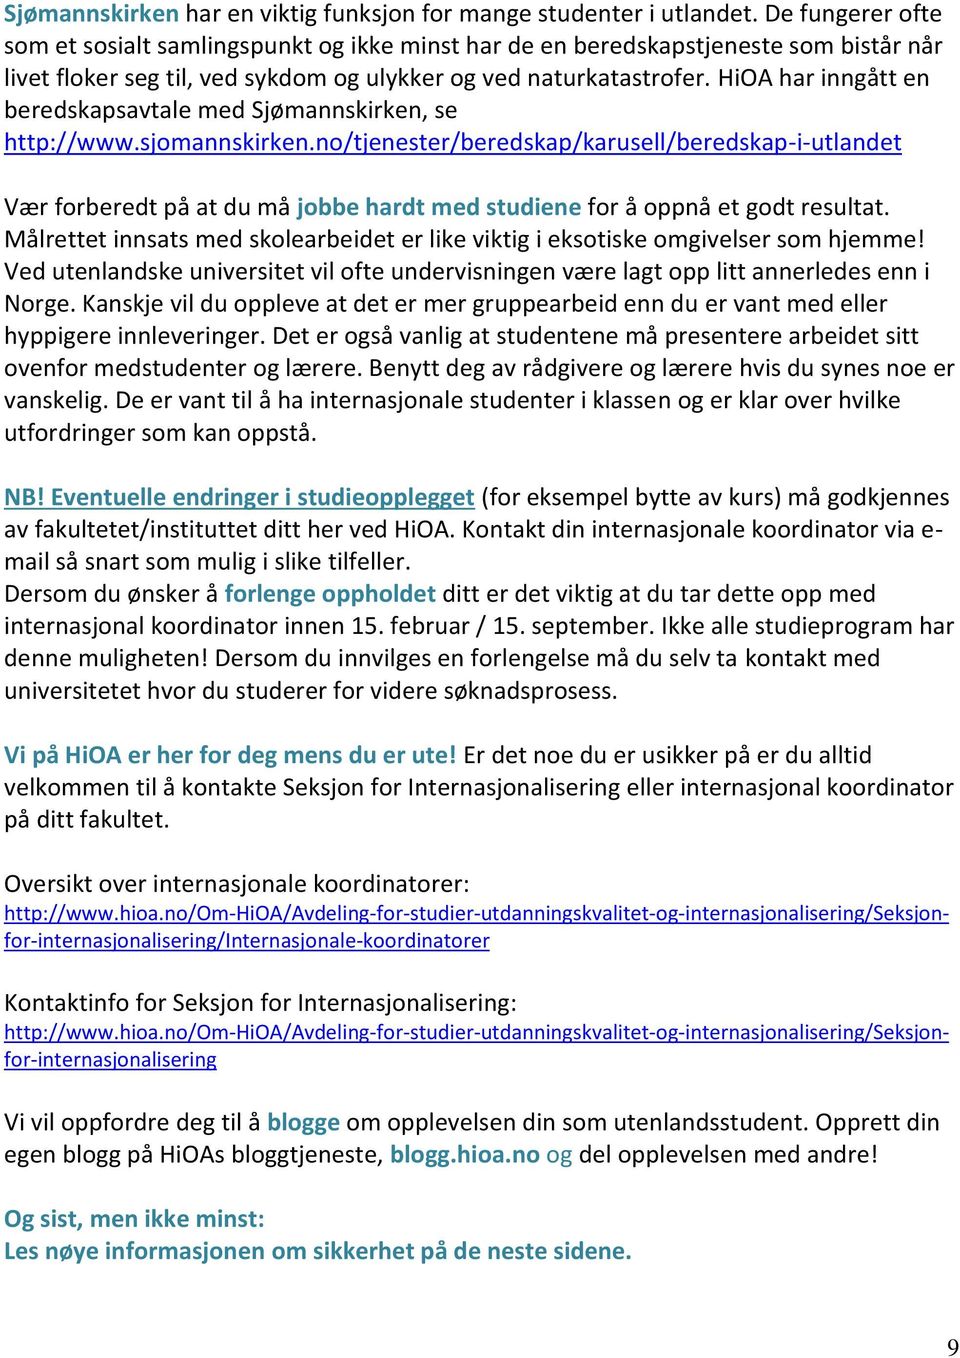 HiOA har inngått en beredskapsavtale med Sjømannskirken, se http://www.sjomannskirken.